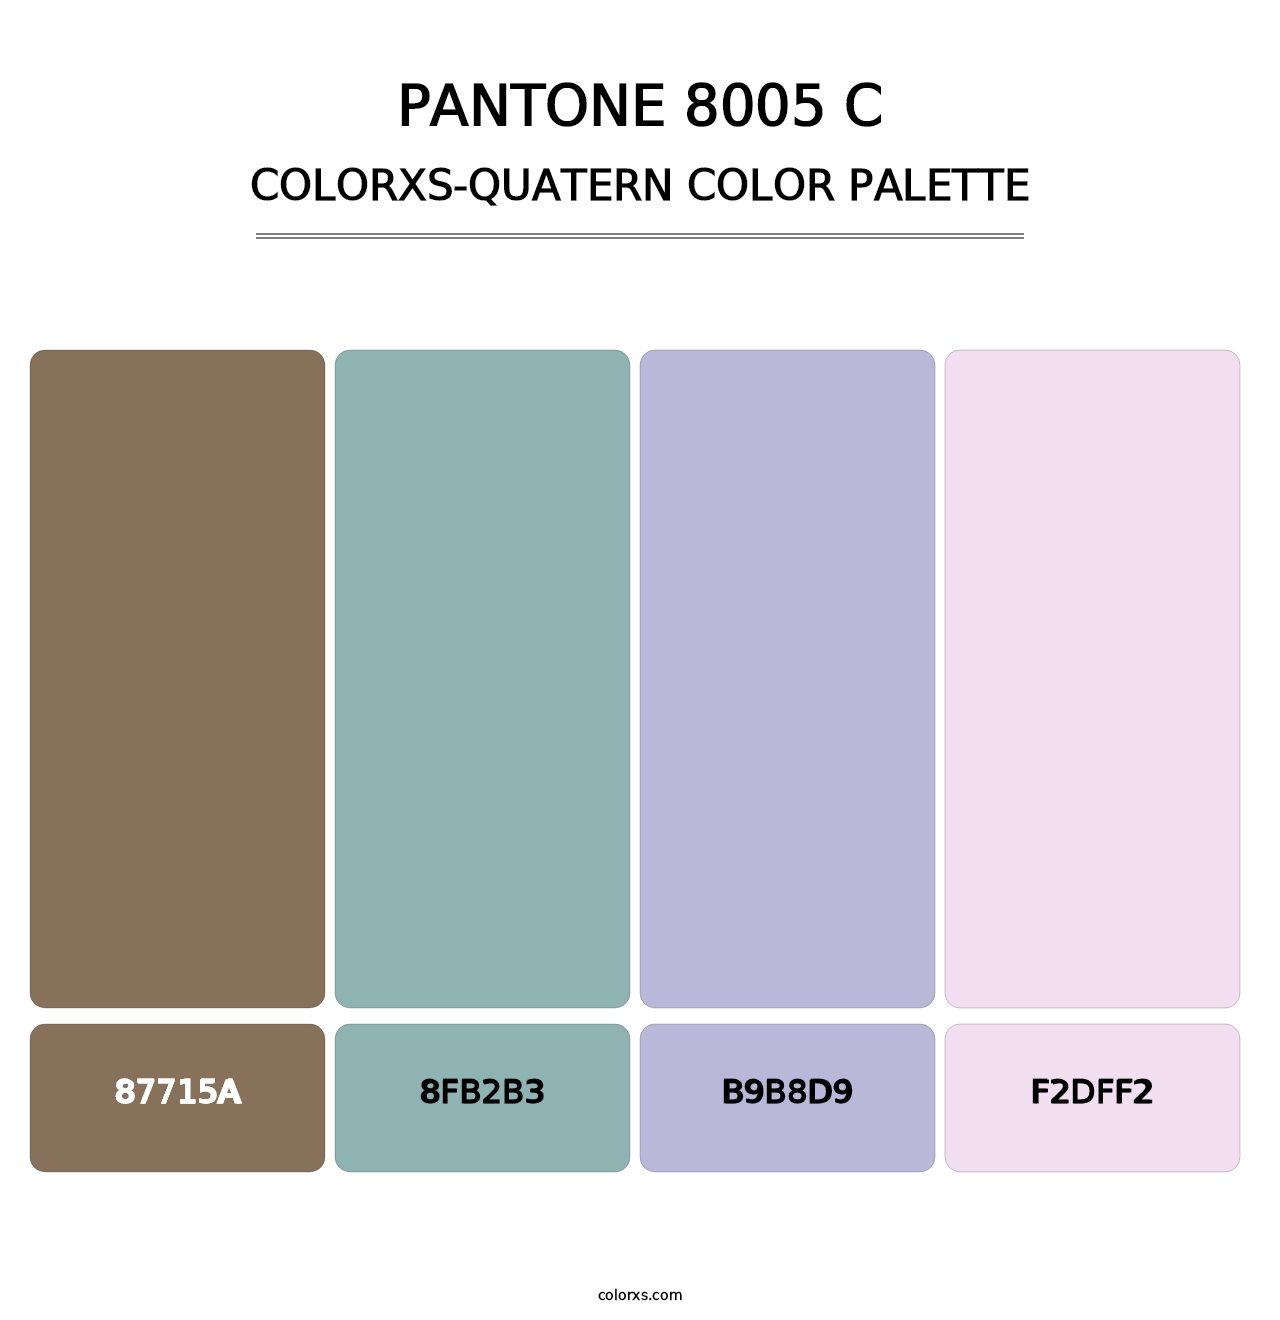 PANTONE 8005 C - Colorxs Quatern Palette